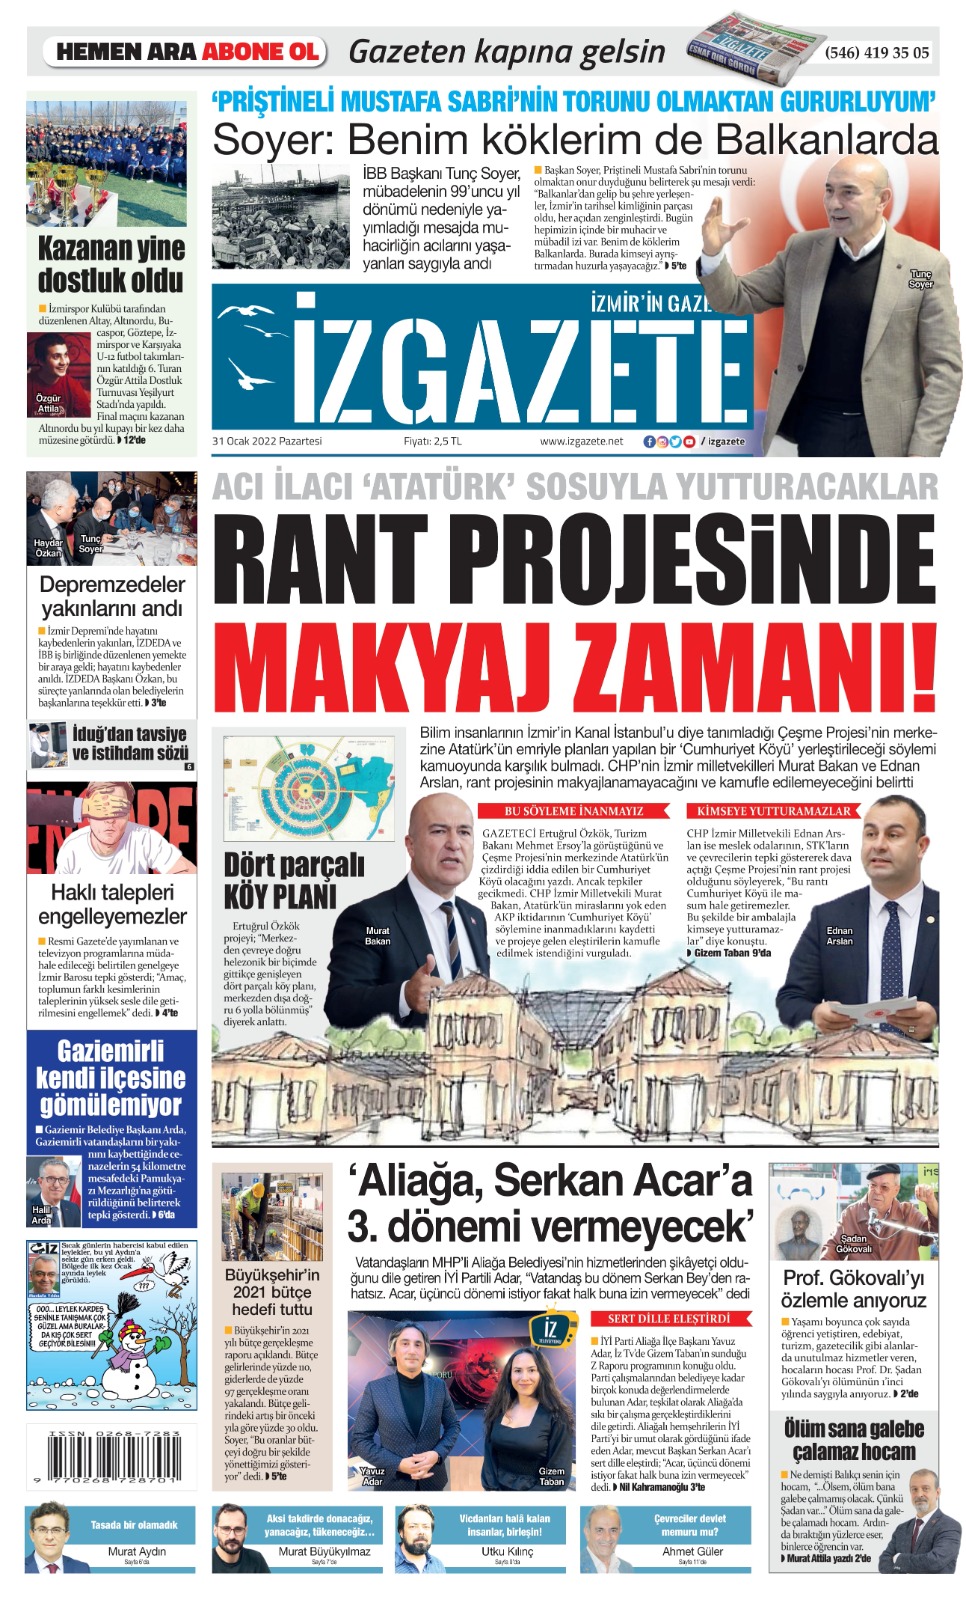 İz Gazete - İzmir'in Gazetesi - 31.01.2022 Manşeti